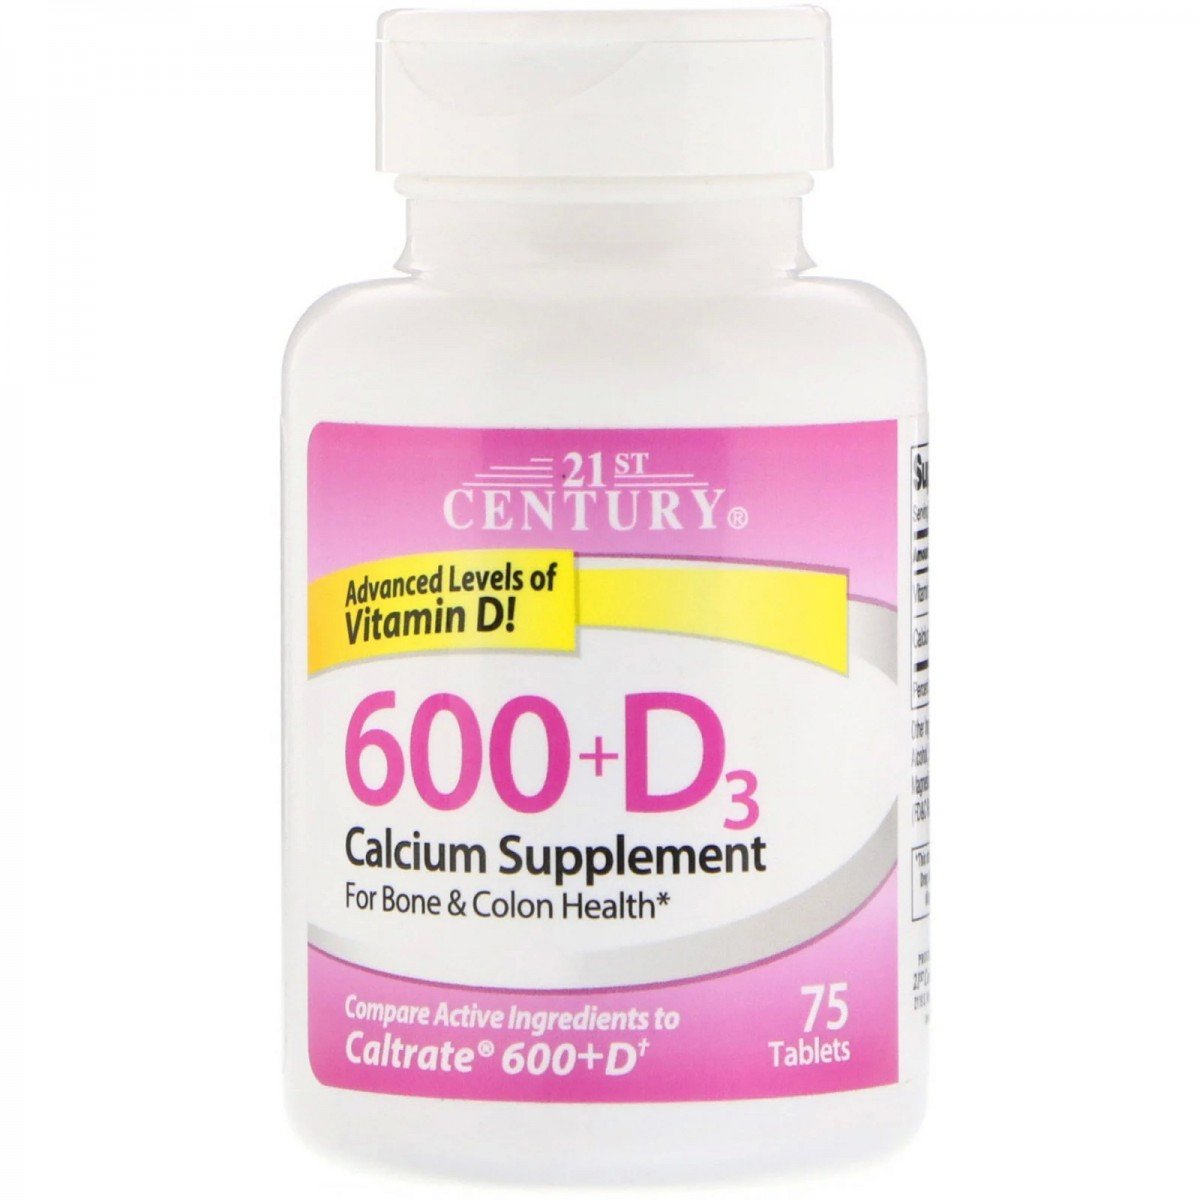 Комплекс 21st Century 600+D3 Calcium Supplement 75 Tabs,  мл, 21st Century. Витамины и минералы. Поддержание здоровья Укрепление иммунитета 